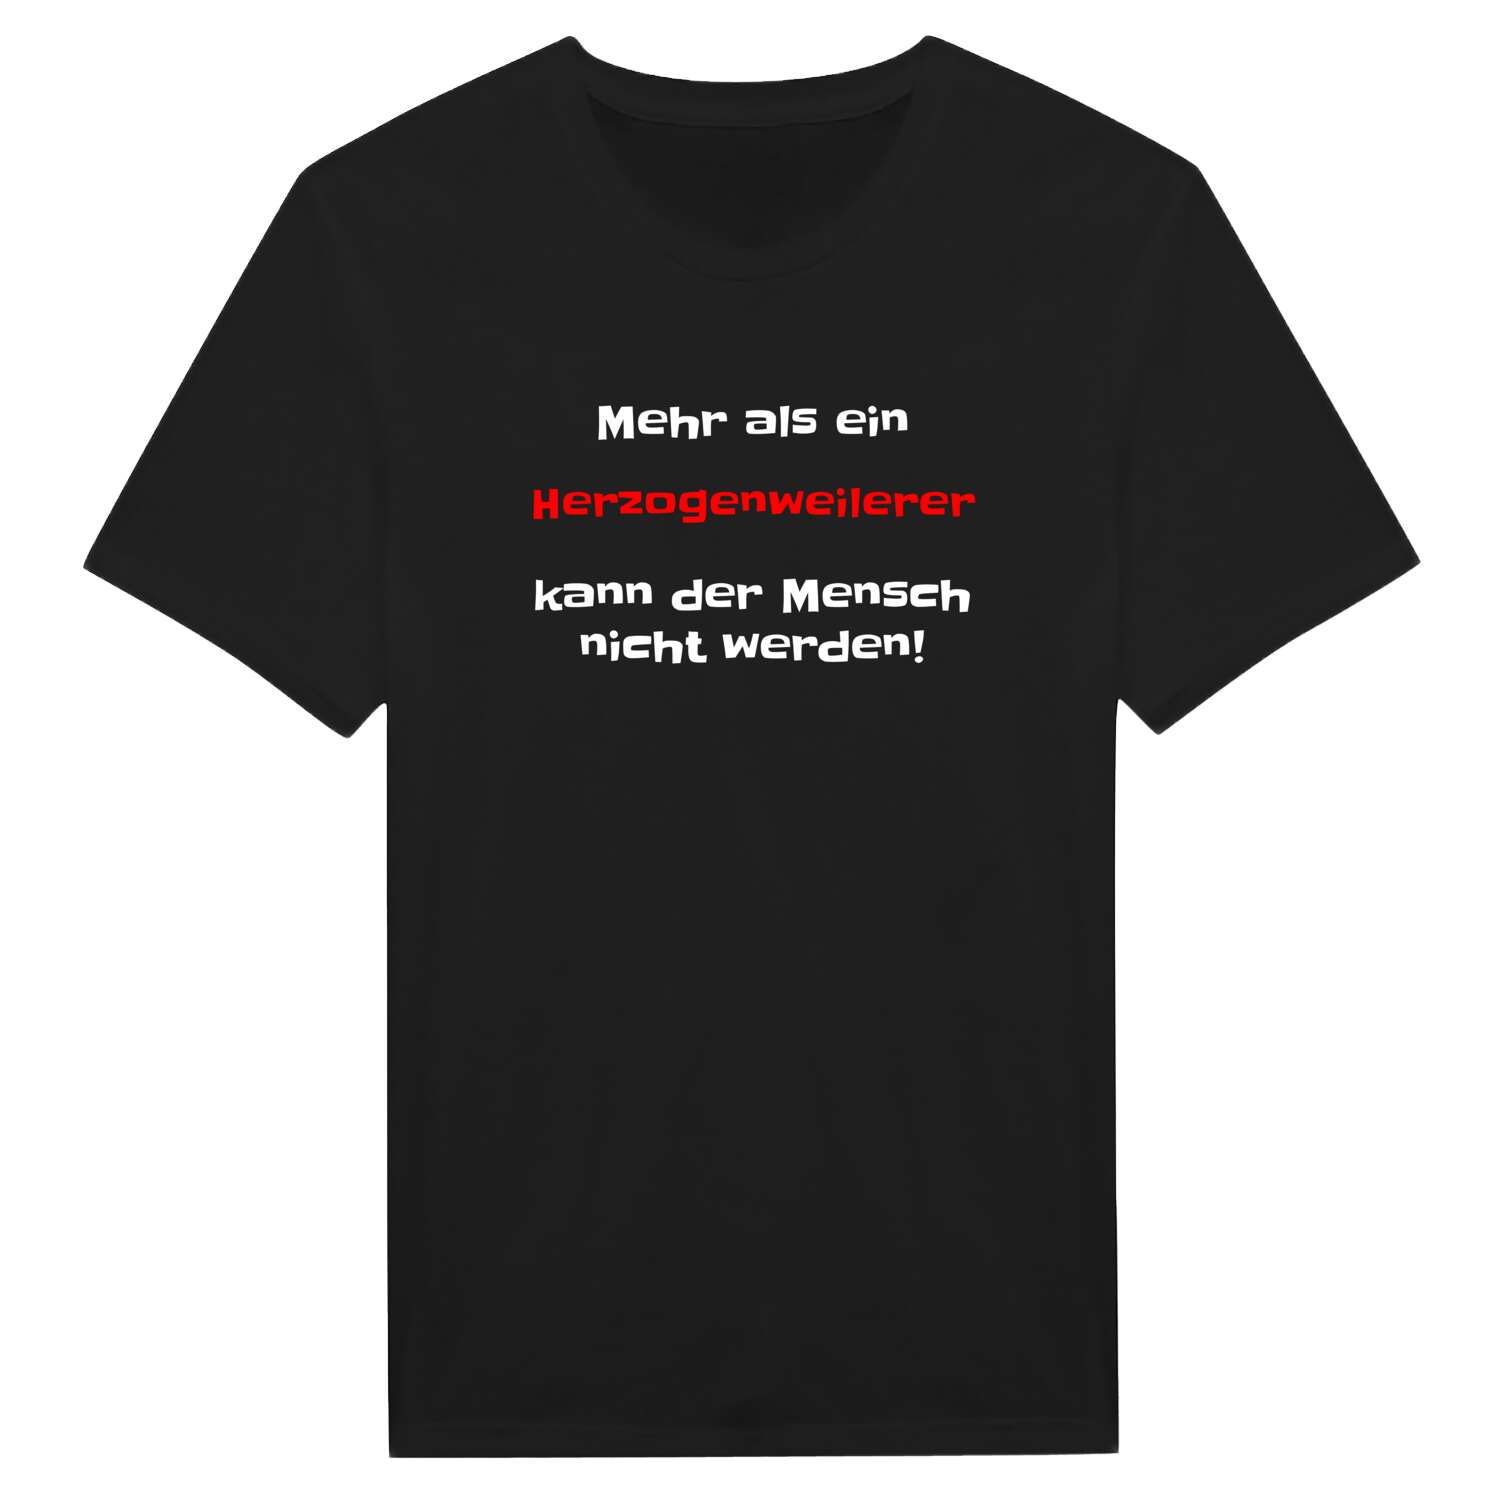 Herzogenweiler T-Shirt »Mehr als ein«